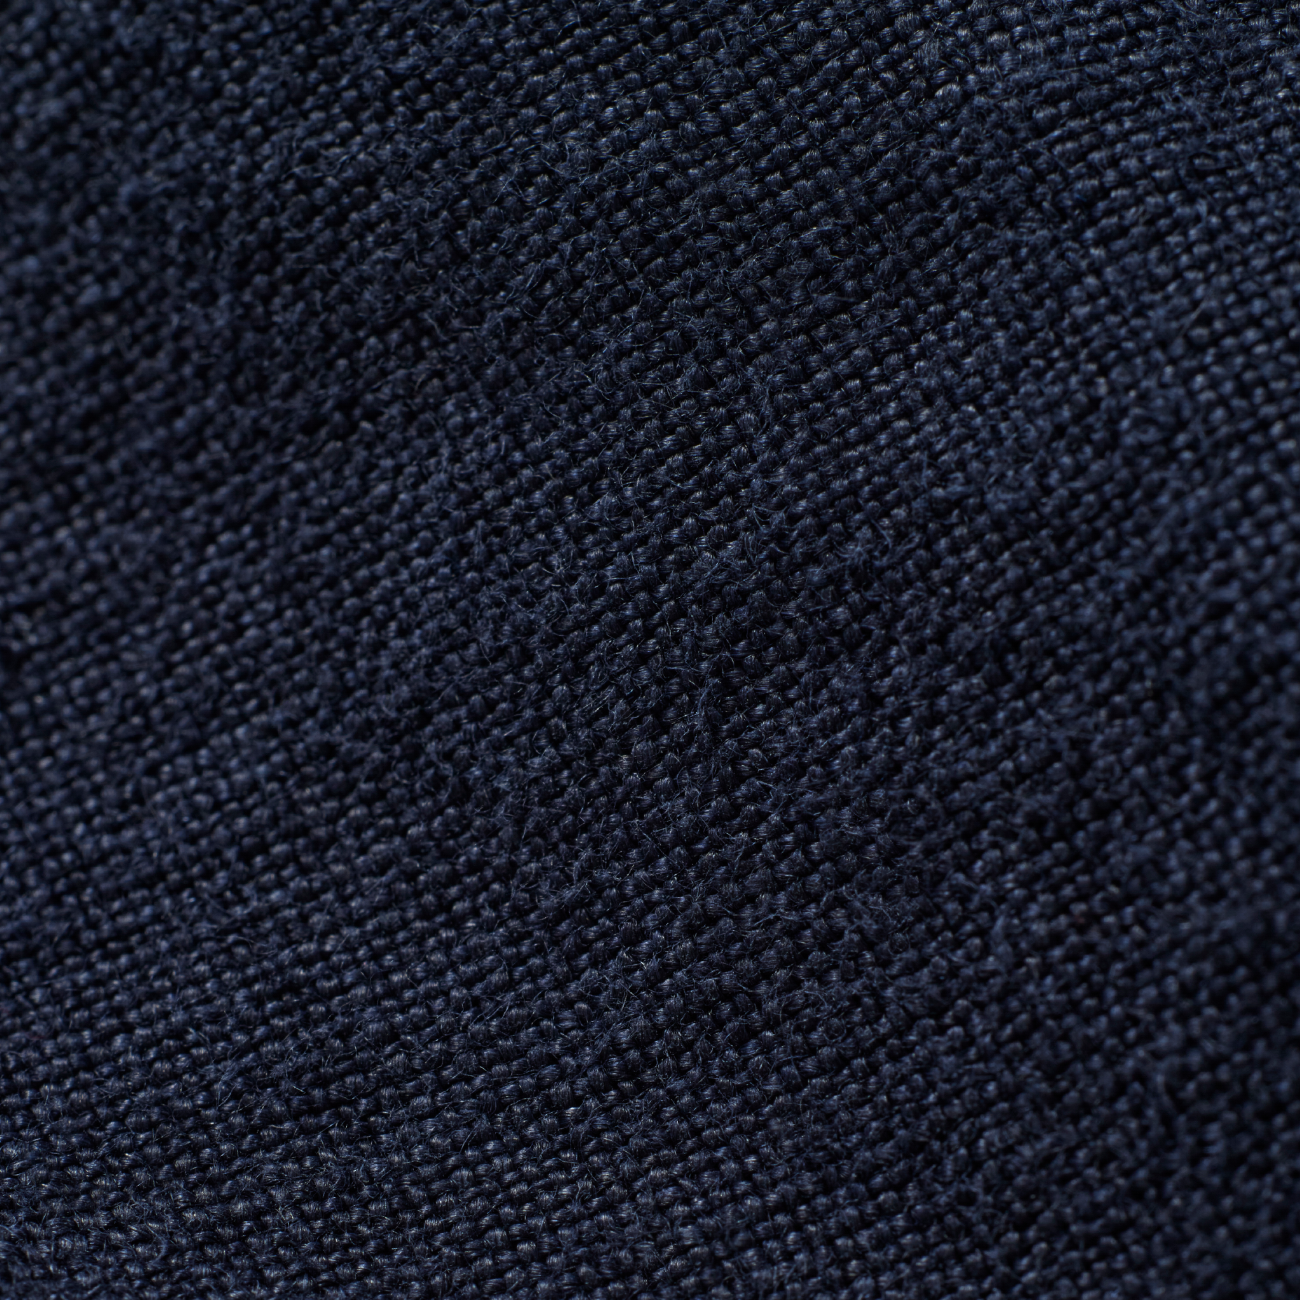 A.P.C. x JJJJound Weekend Button Up Shirt - Dark Navy